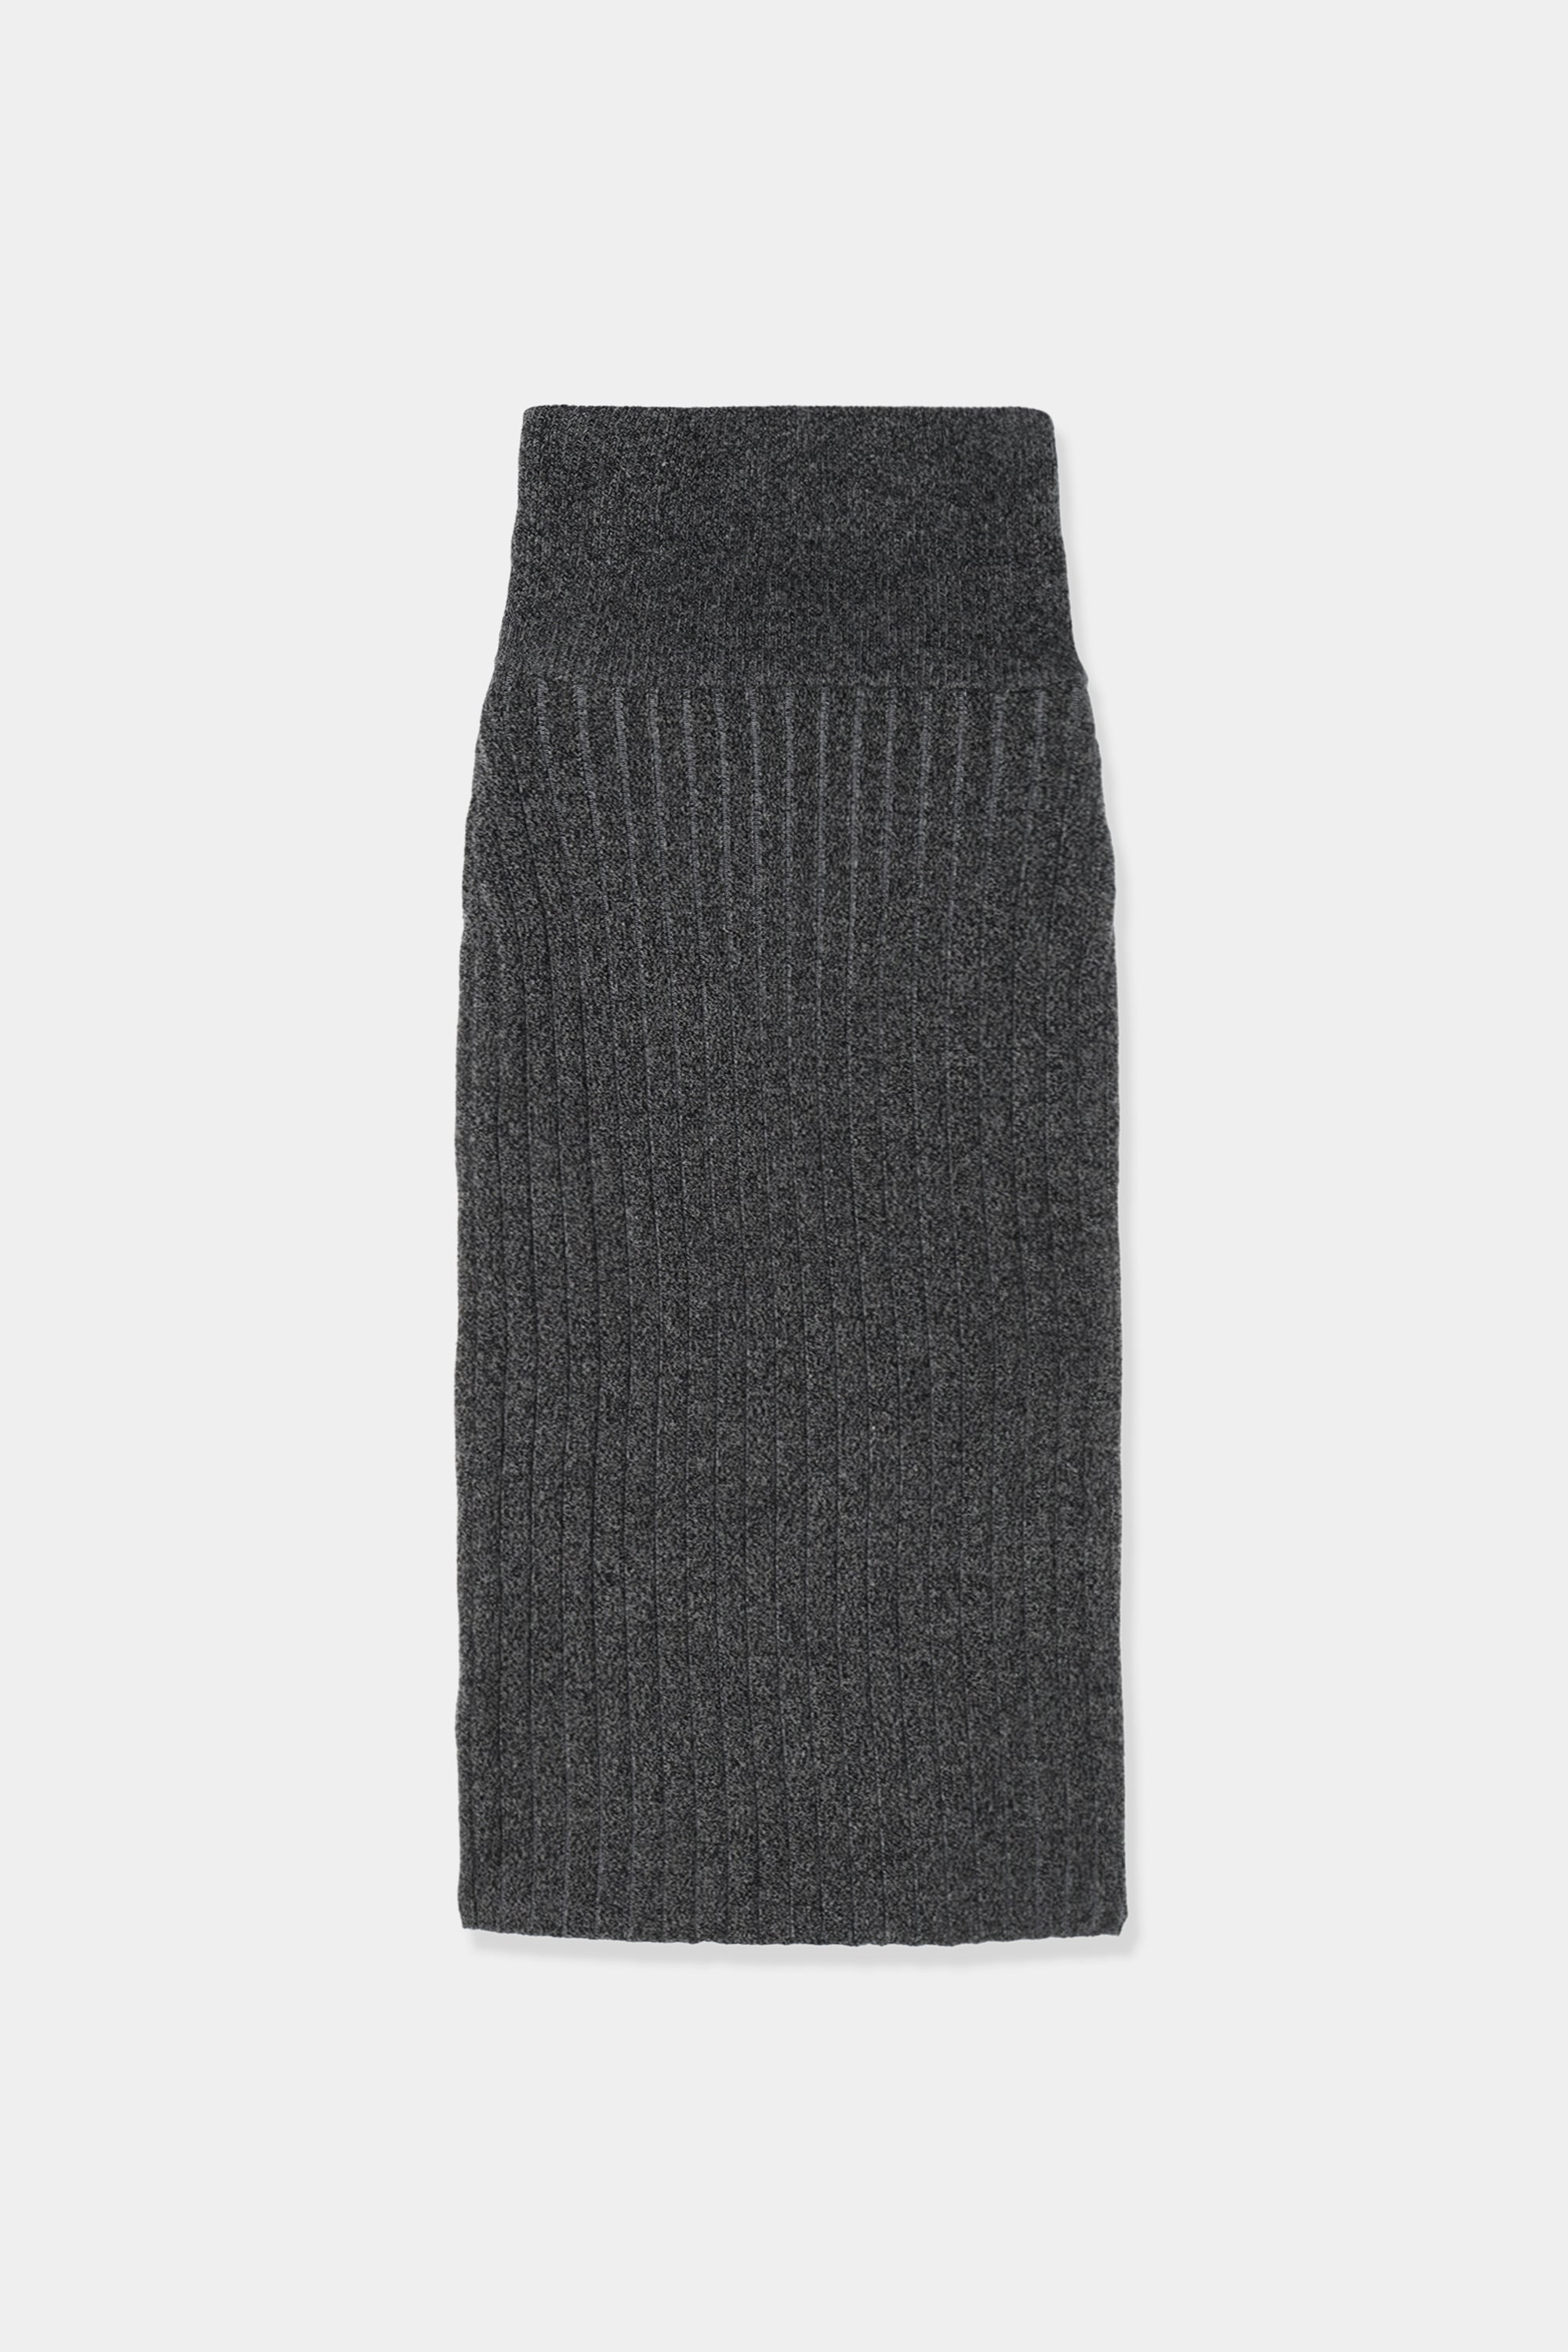 louren plating knit pencil skirt